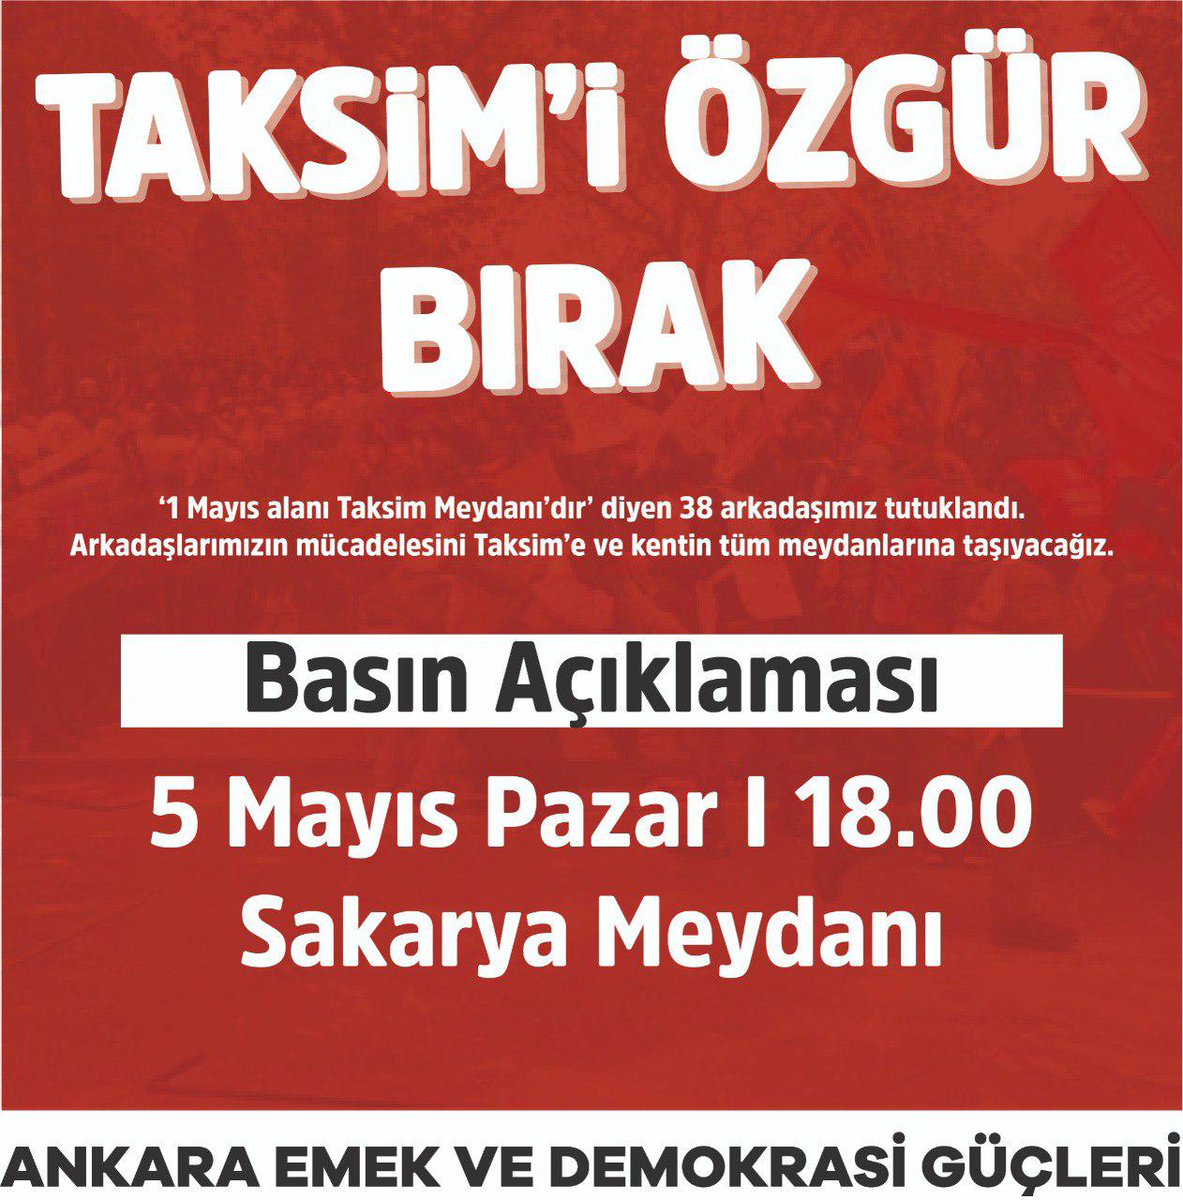 Taksim'i özgür bırak! 1 Mayıs'ta Taksim'e yürümek istedikleri için tutuklanan 38 devrimciyi zalimin elinden alacağız! Saat 18.00'de Sakarya Meydanında buluşuyoruz!